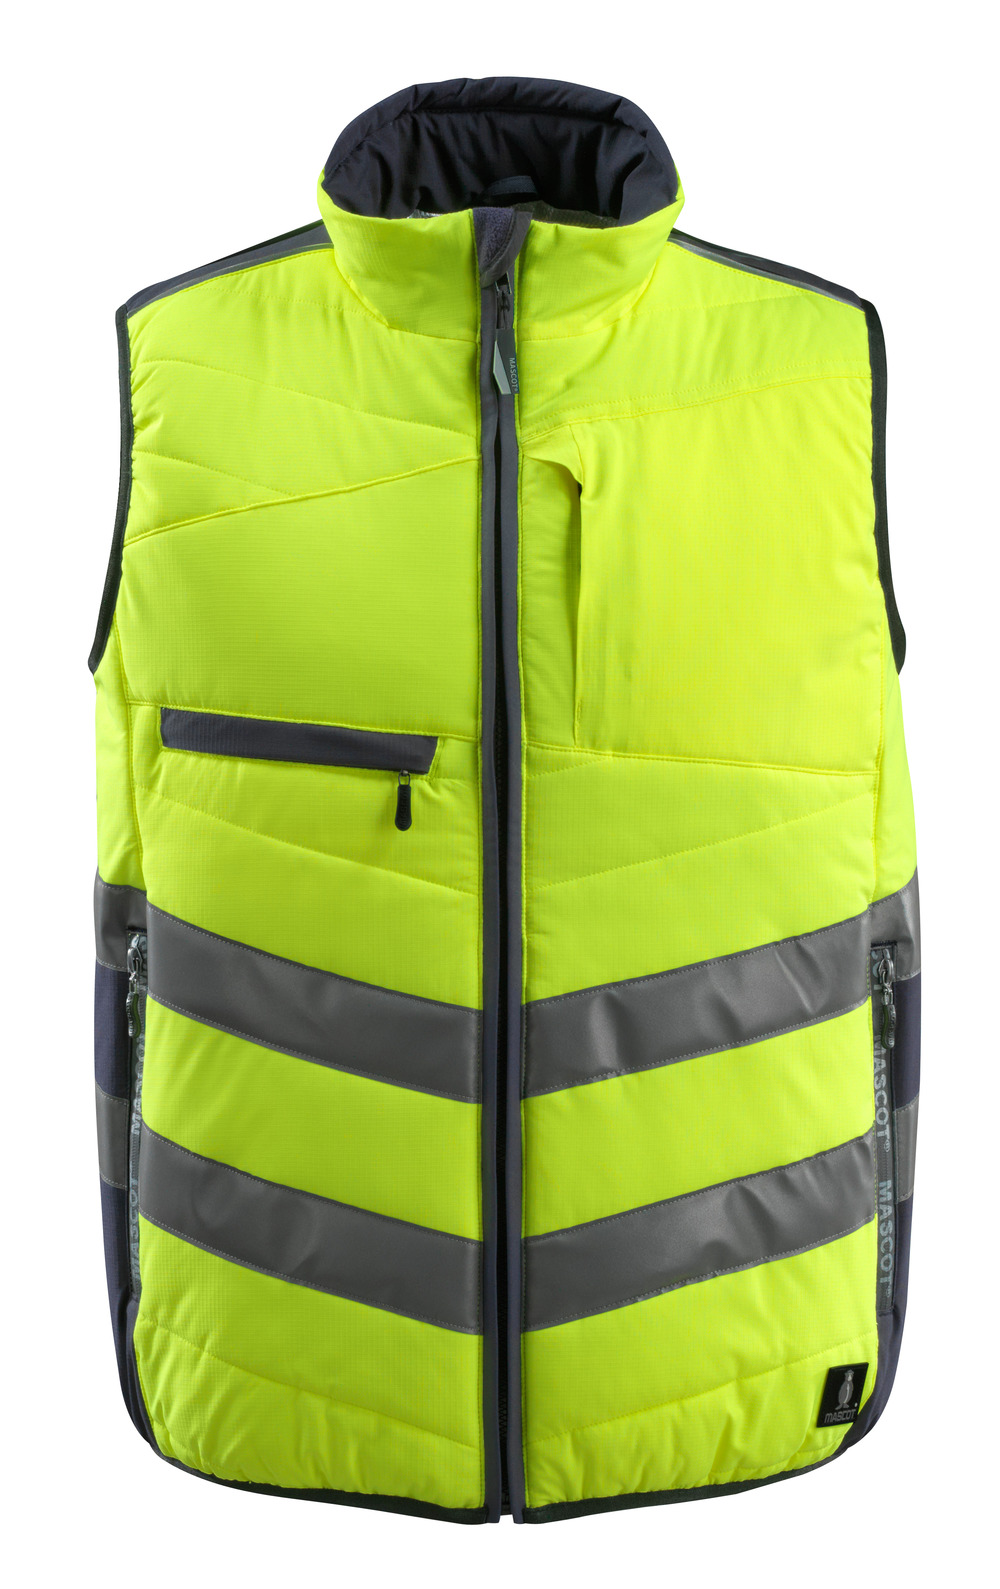 Buy/Shop Hi-Vis Vests – Safety Online in OH – Mascot Workwear